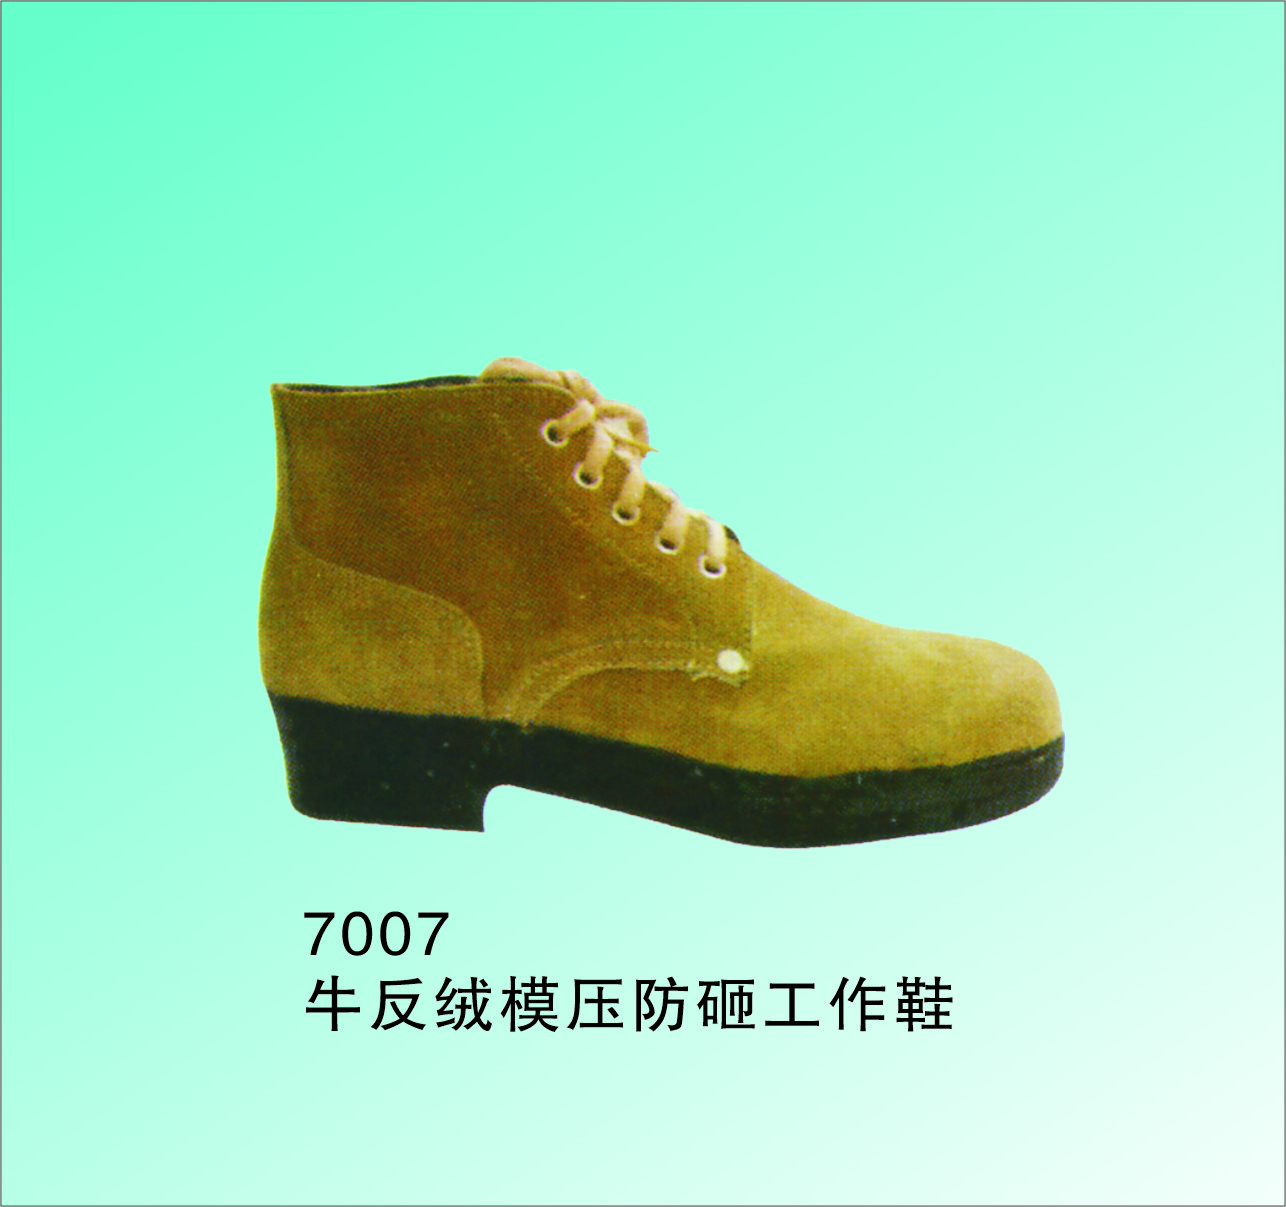 手工制 防砸耐磨工作鞋 牛面纯棉里优质橡胶底 7007